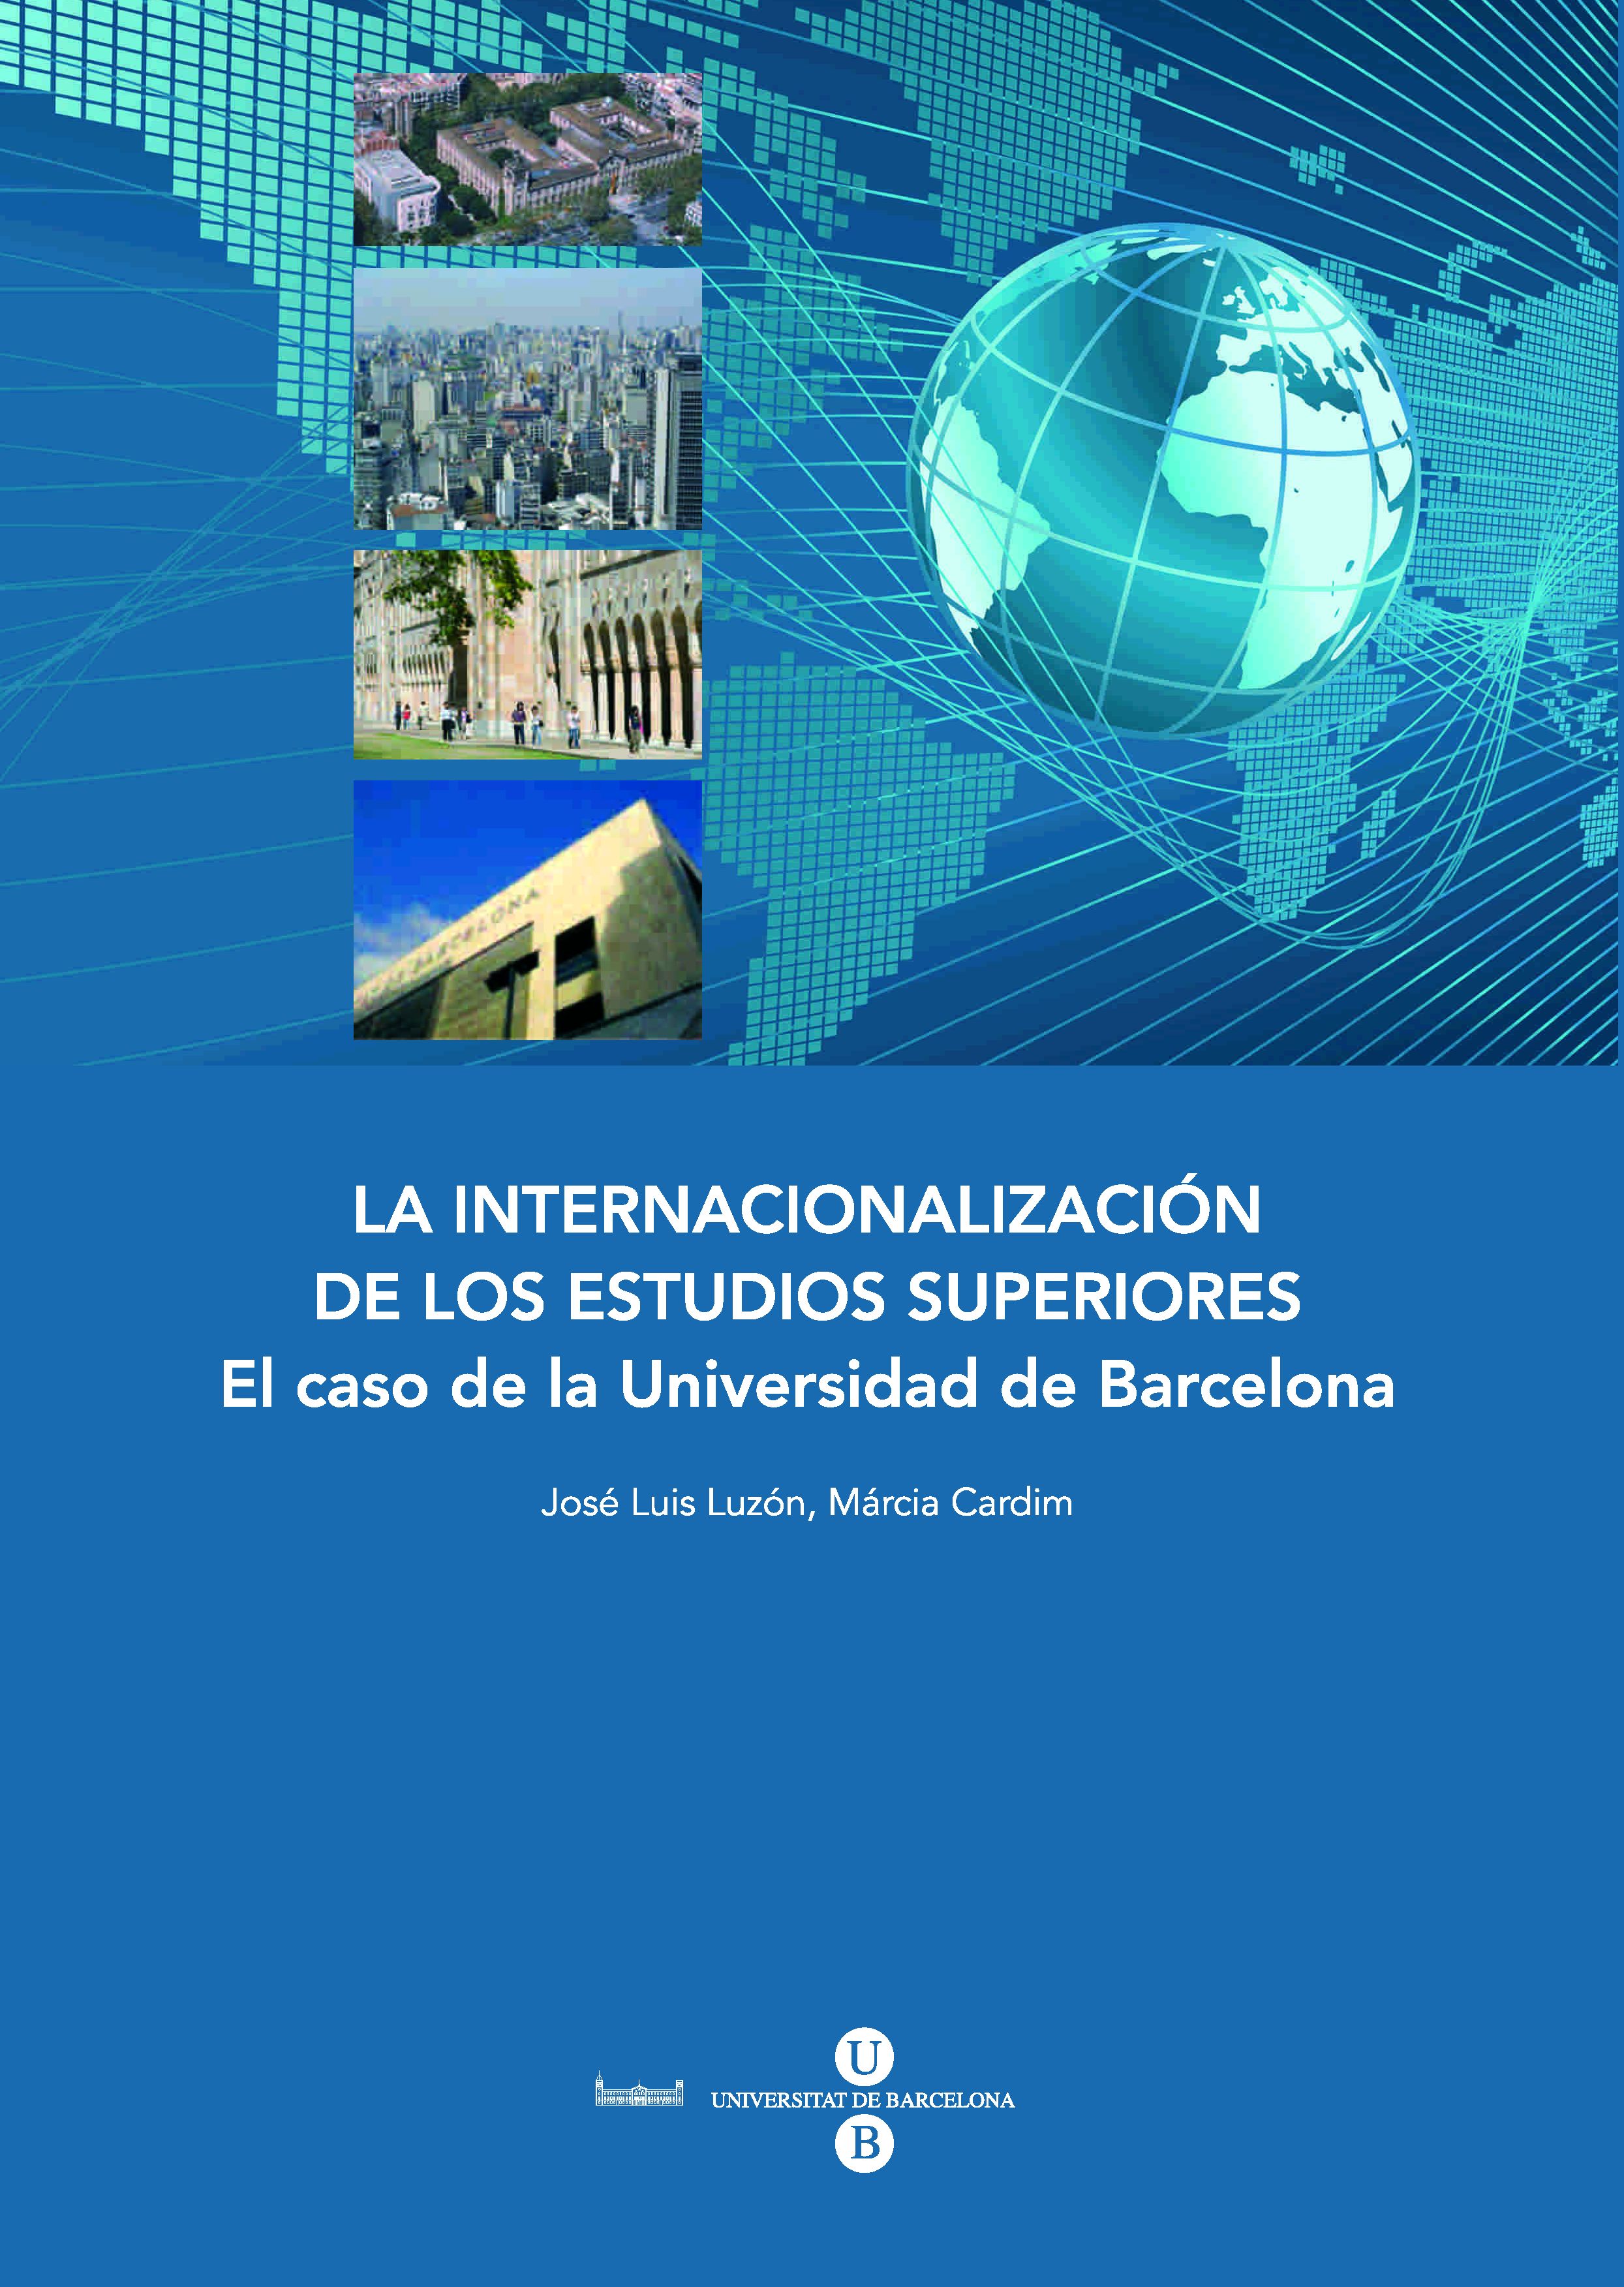 La internacionalizaciÃ³n de los estudios superiores: el caso de la Universidad de Barcelona